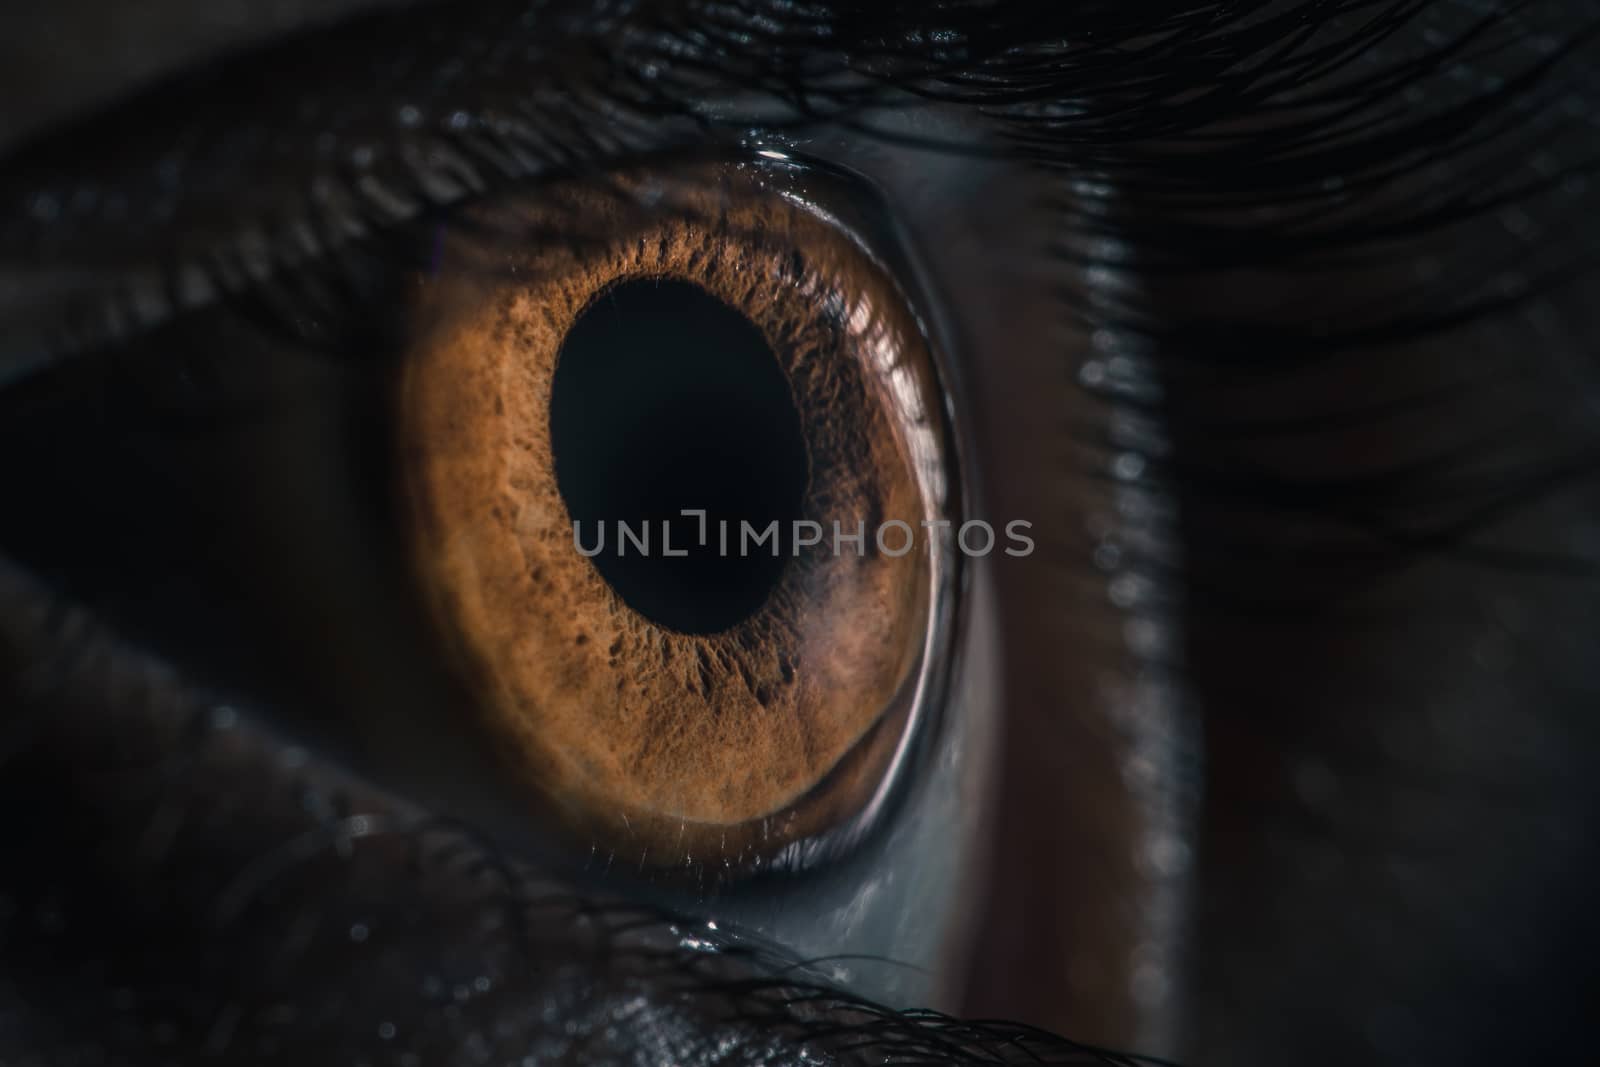 Extreme closeup of human brown eye - pupil iris